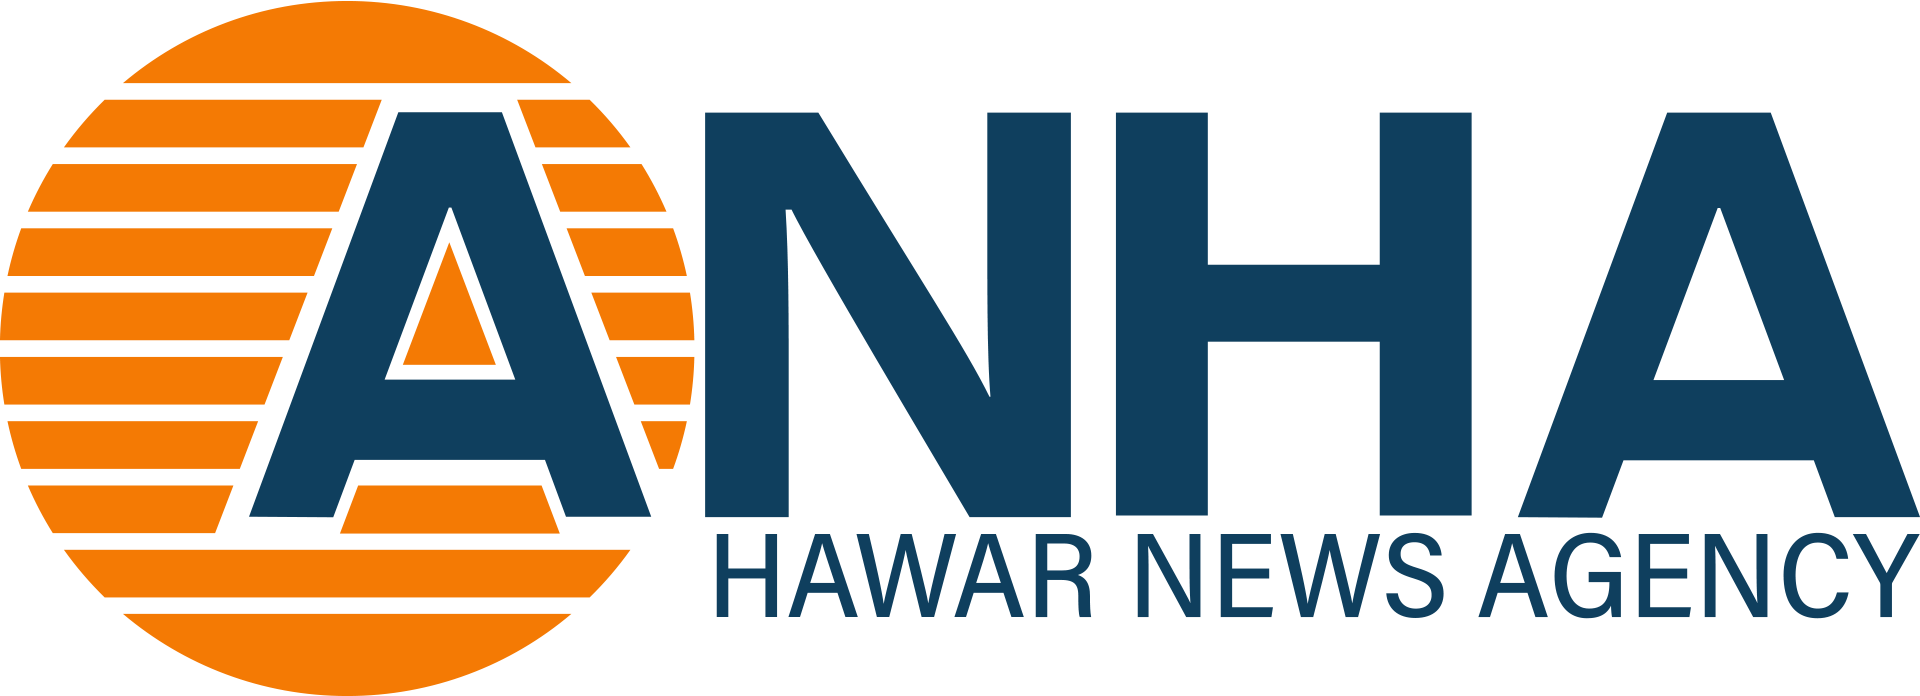 www.hawarnews.com